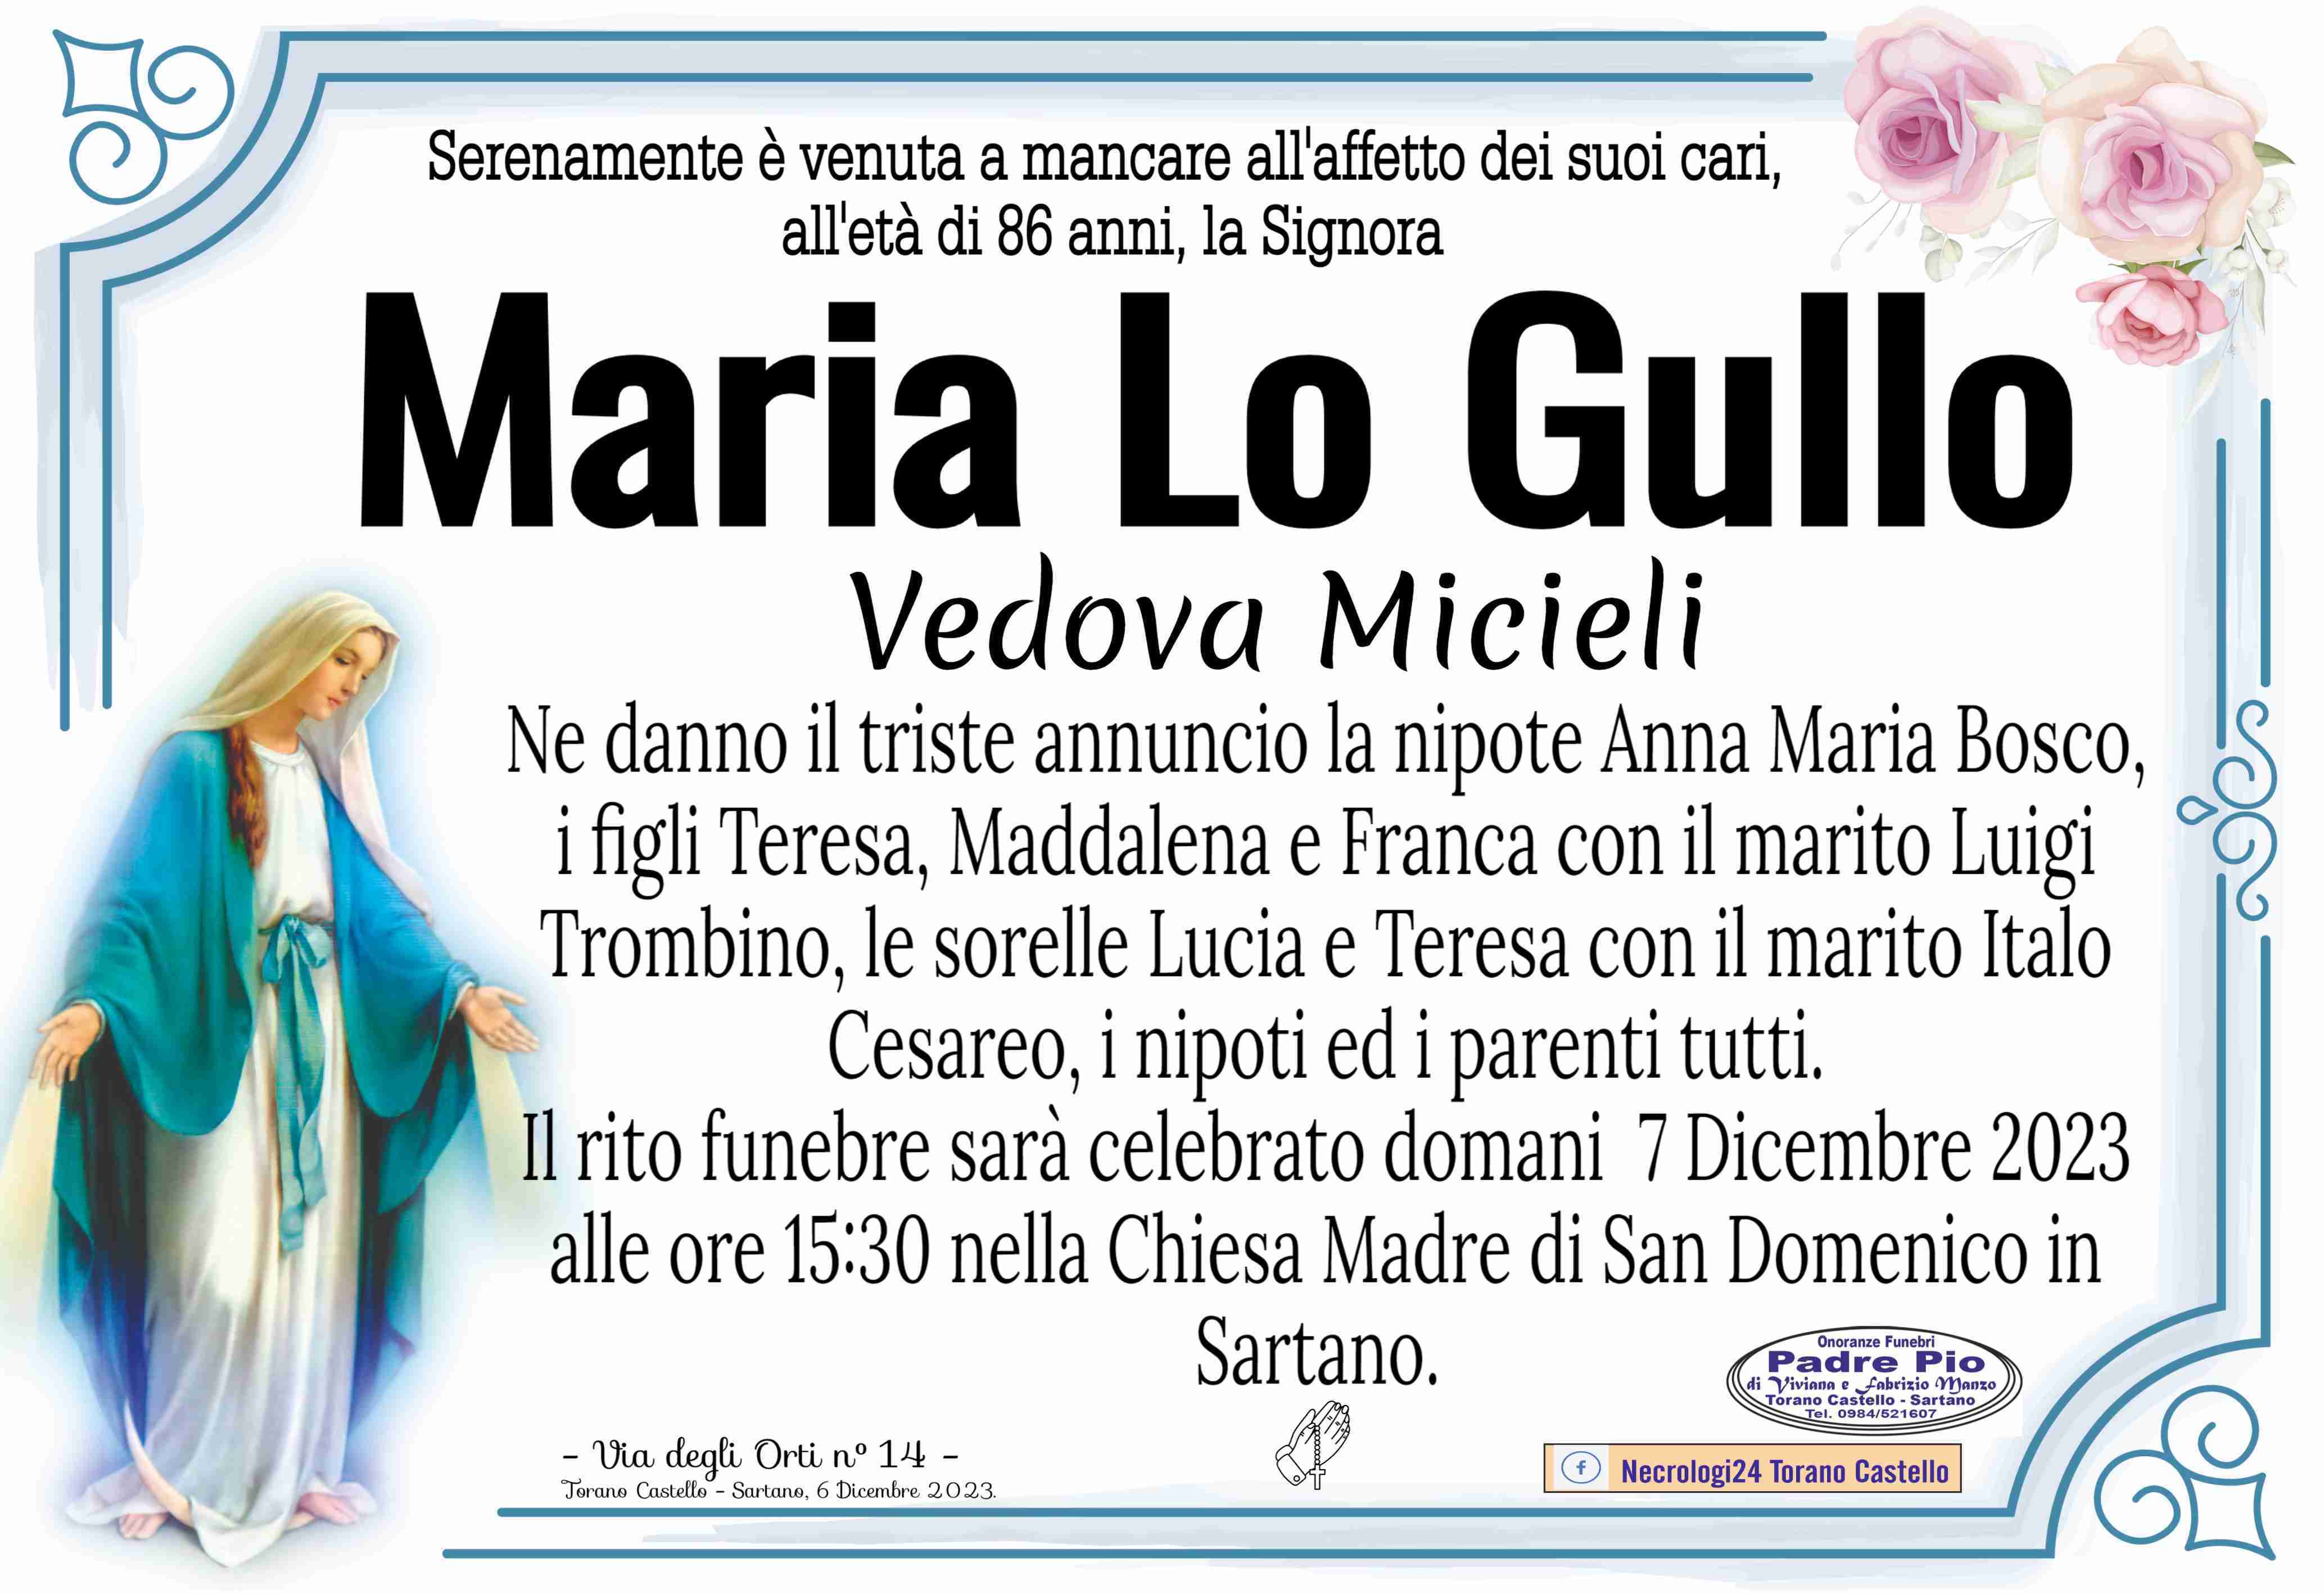 Maria Lo Gullo